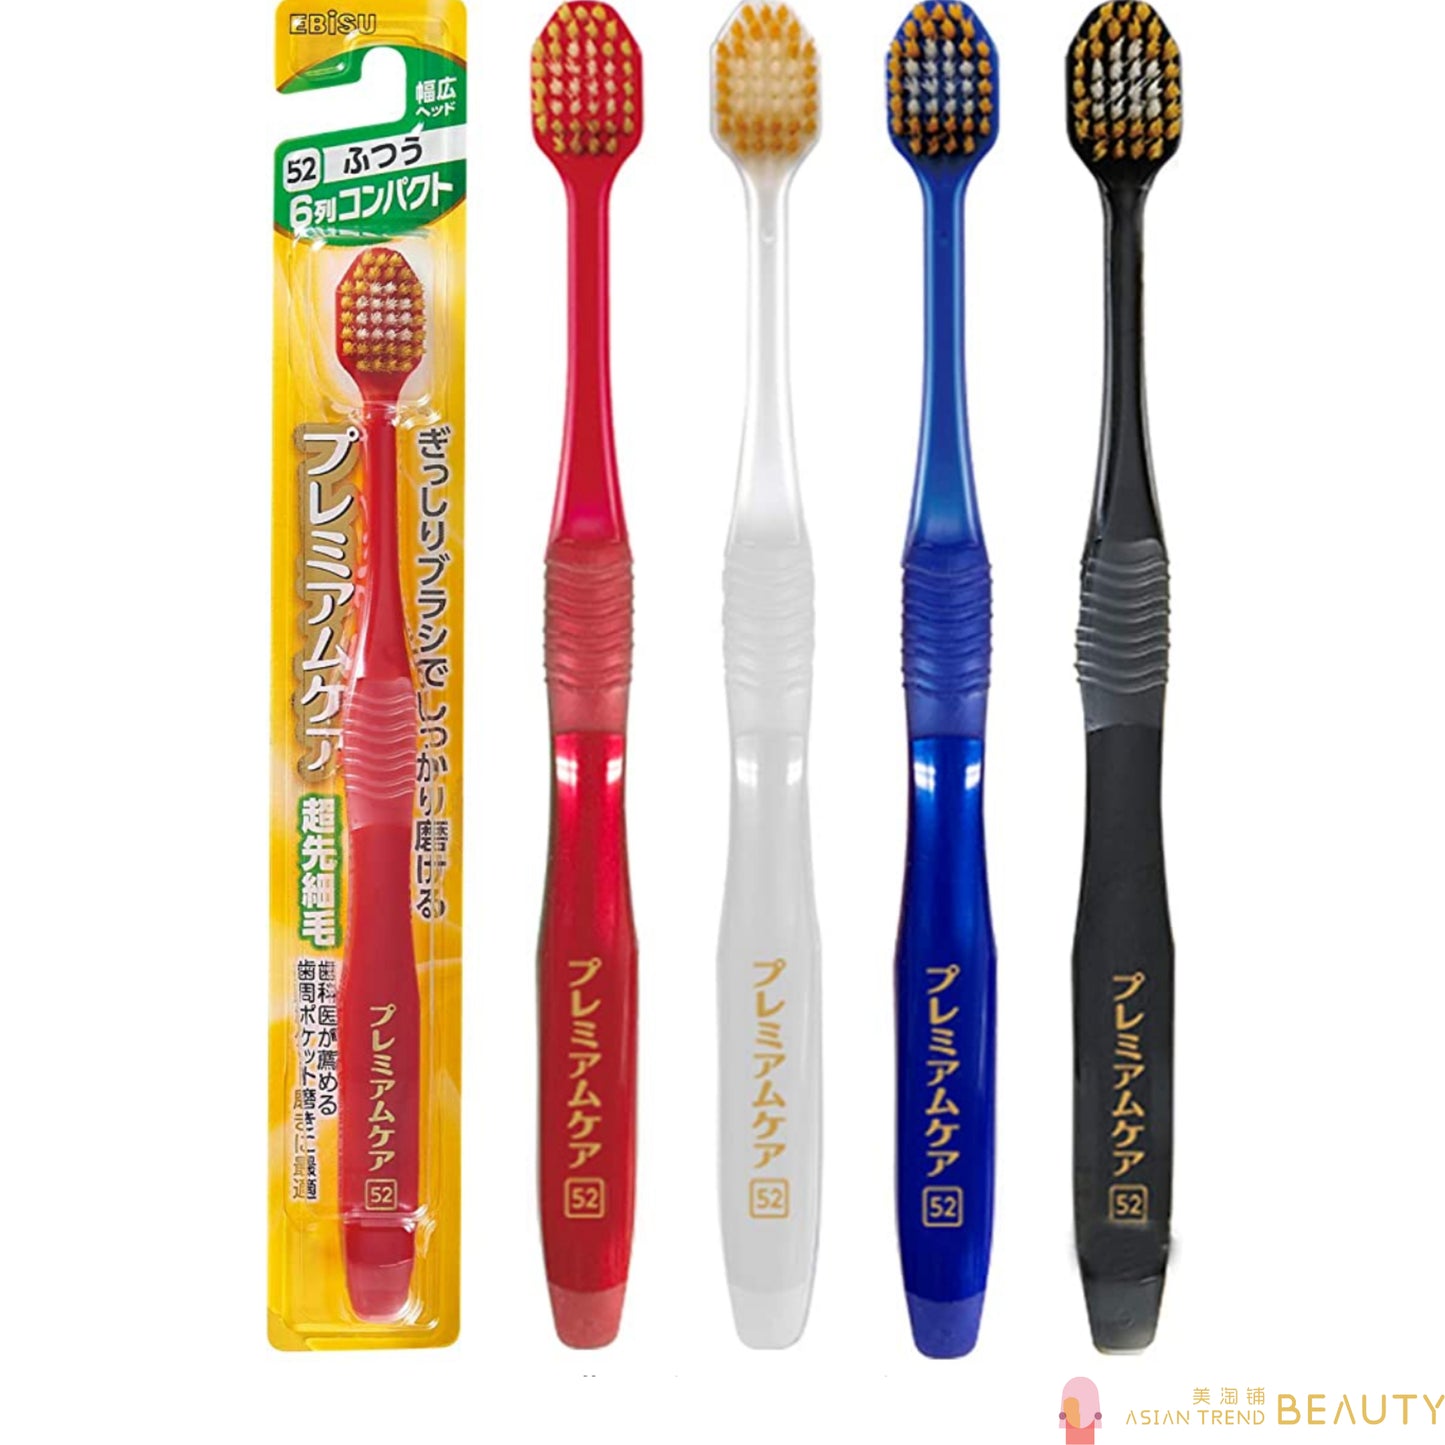 Ebisu Premium Care Toothbrush Random Color